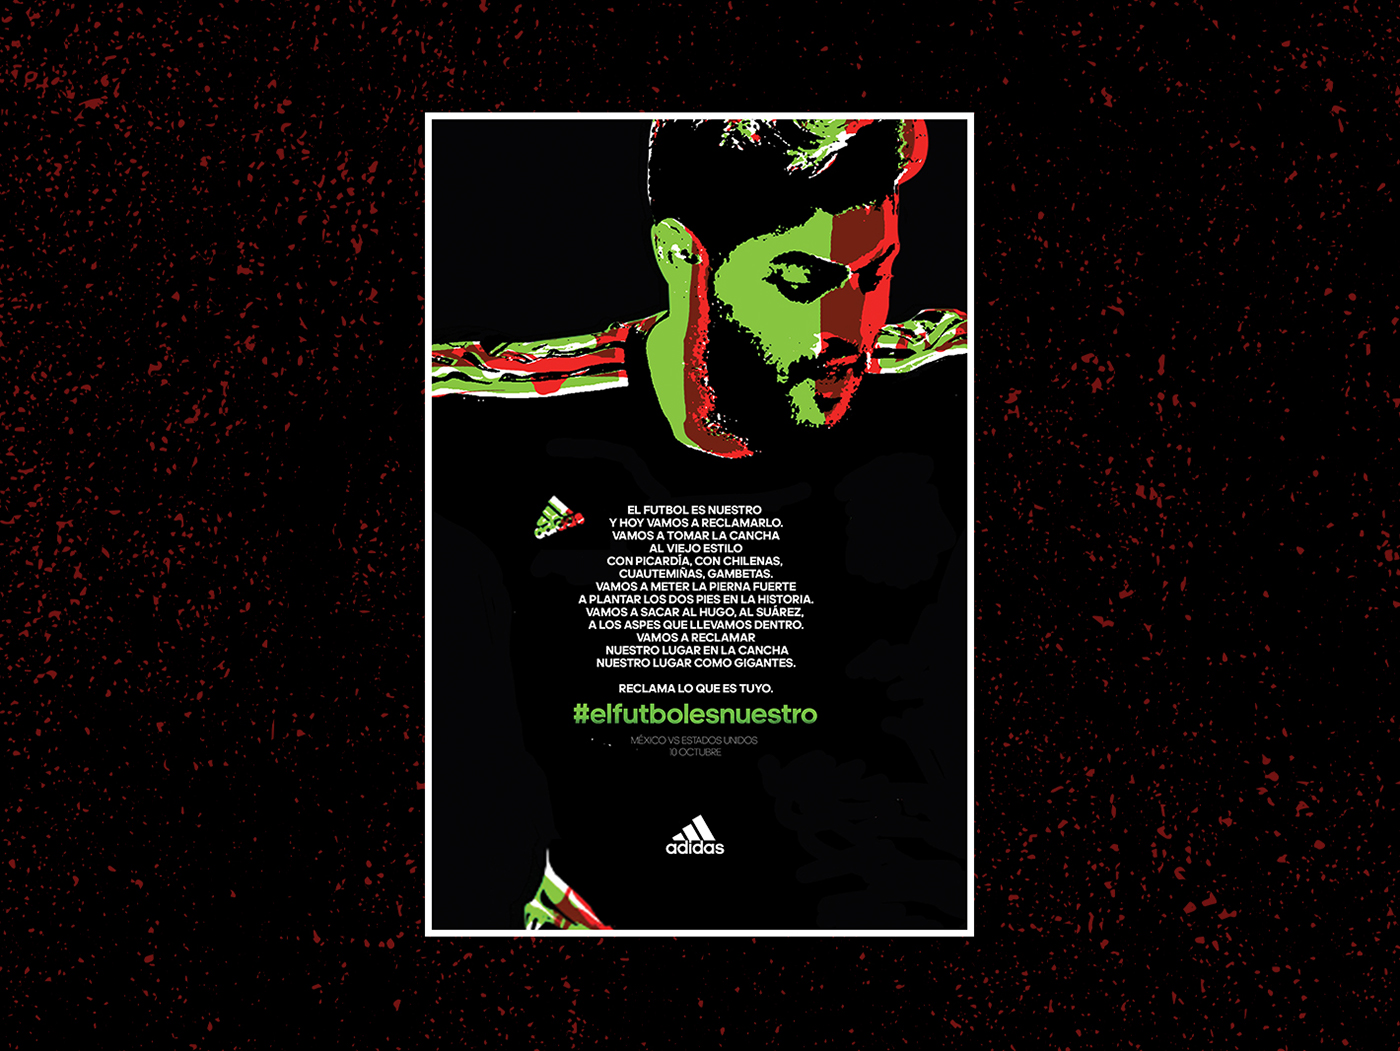 Futbol adidas mexico mundial world cup soccer seleccion mexcicana el Tri poster